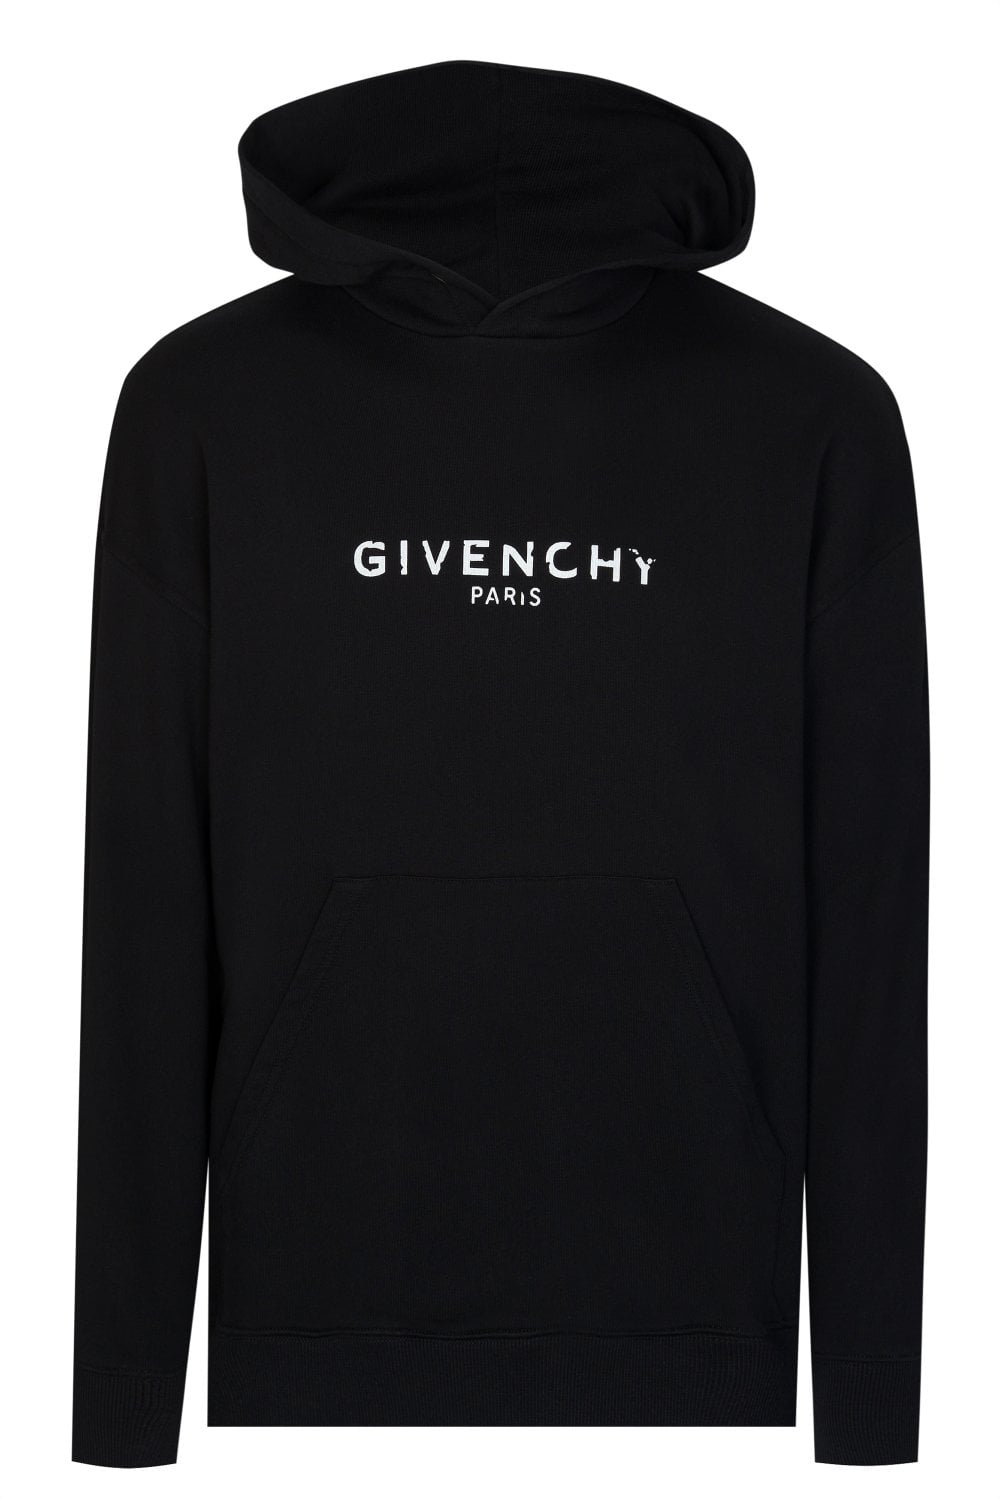 Givenchy Paris Logo - GIVENCHY Givenchy Paris Logo Hooded Sweatshirt